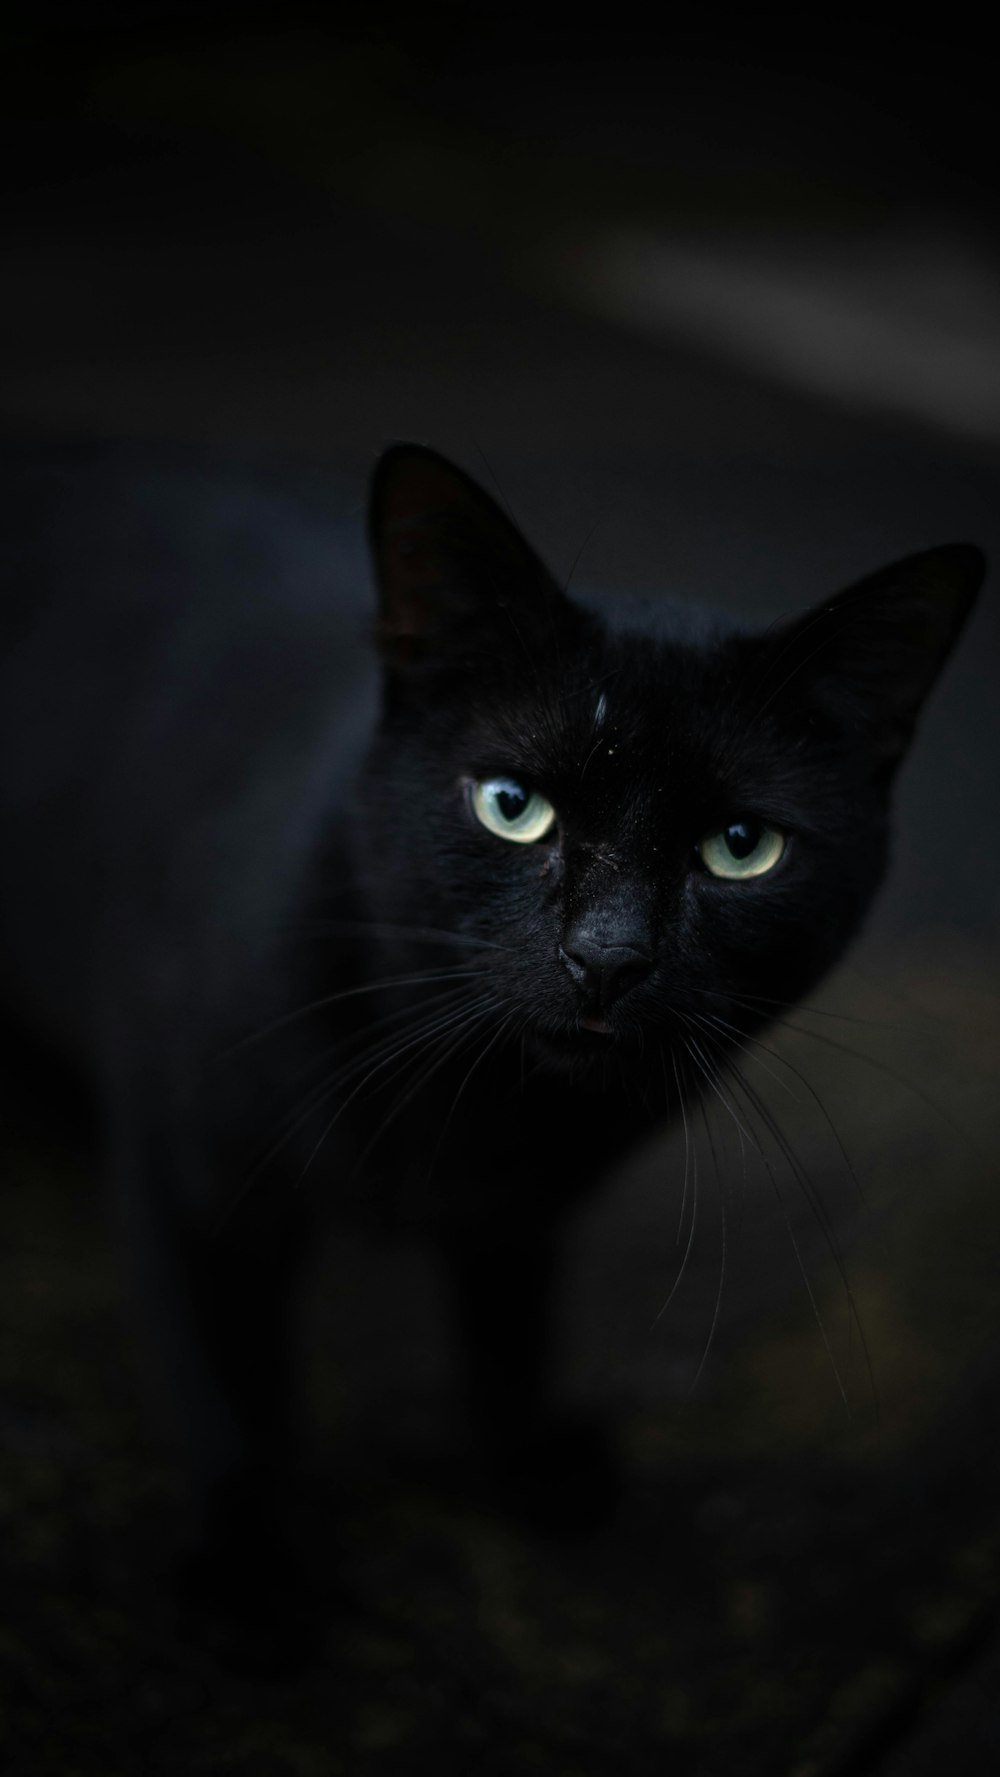 緑の目をした黒猫